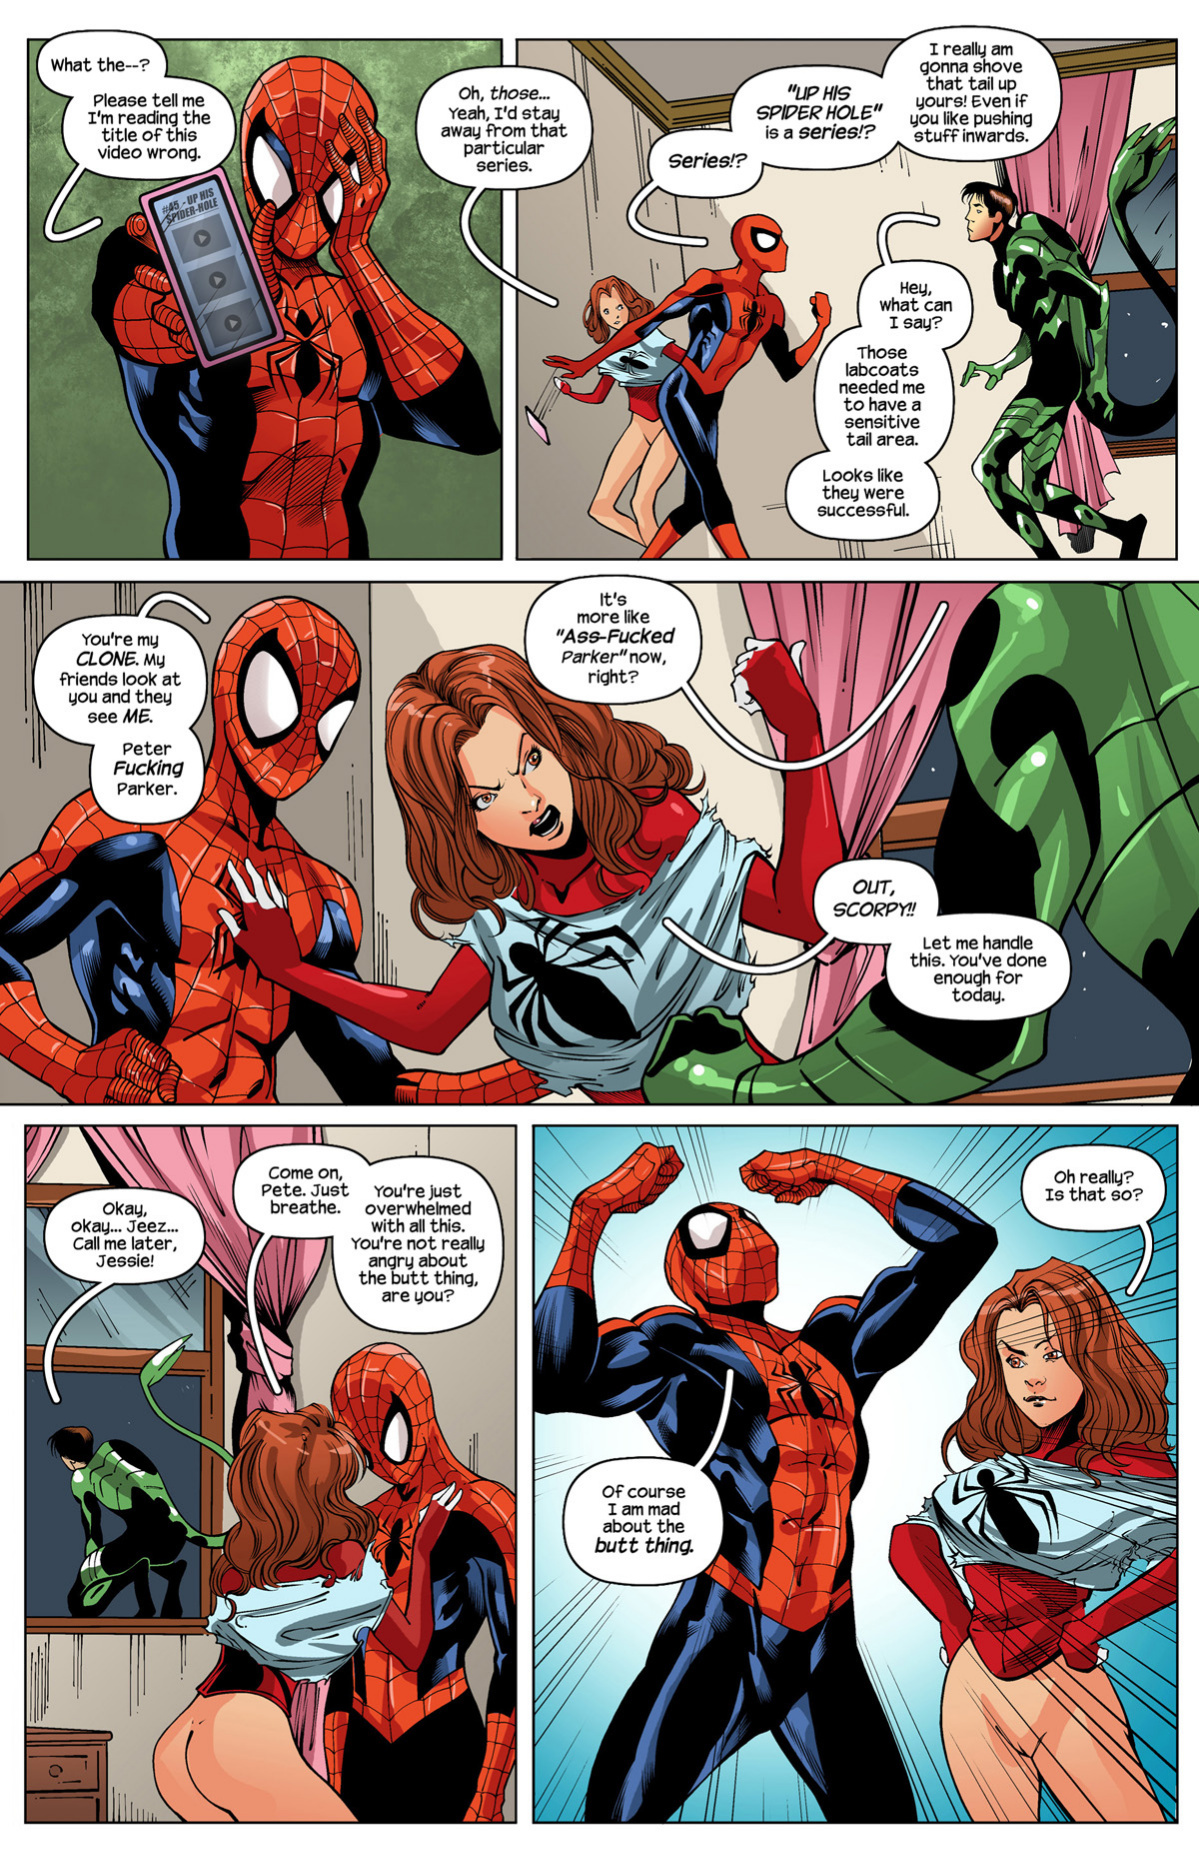 Ultimate Spider-Man XXX 12 - Spidercest porn comics Oral sex, Anal Sex